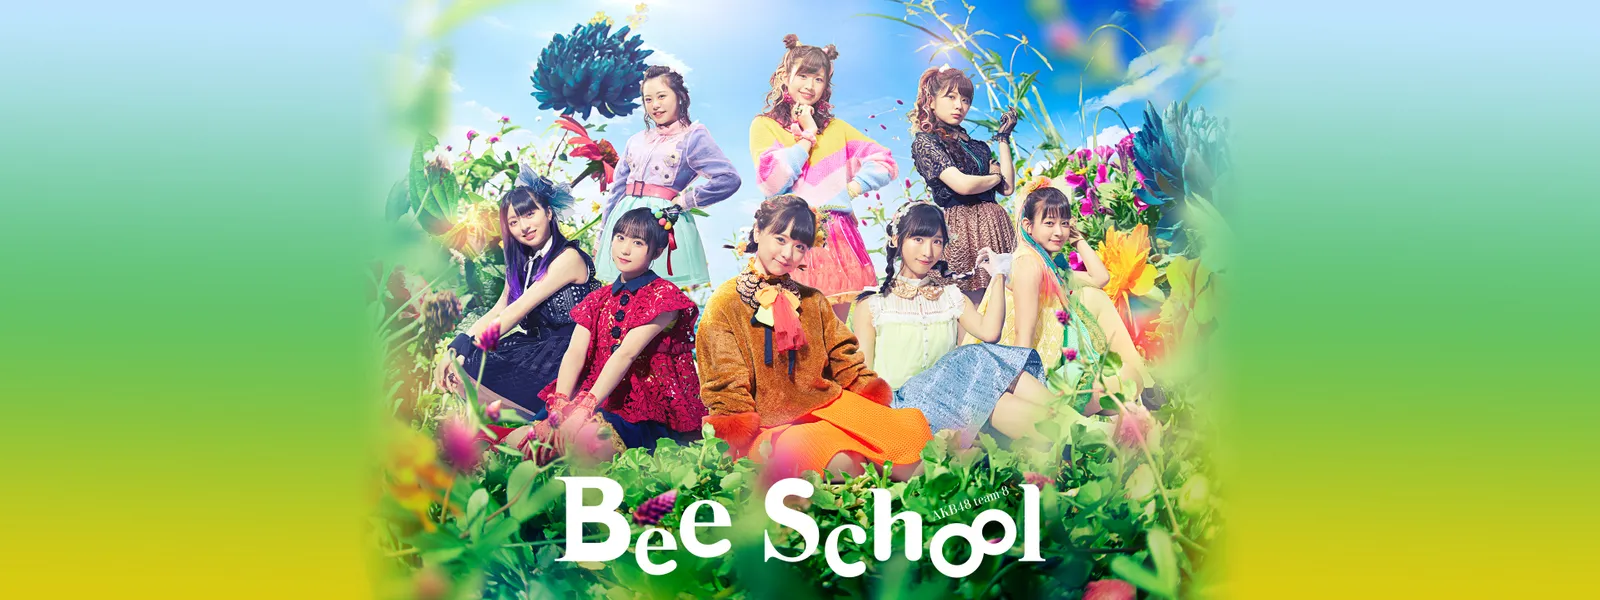 Akb48 チーム8 単独公演 Bee School が見放題 Hulu フールー お試し無料